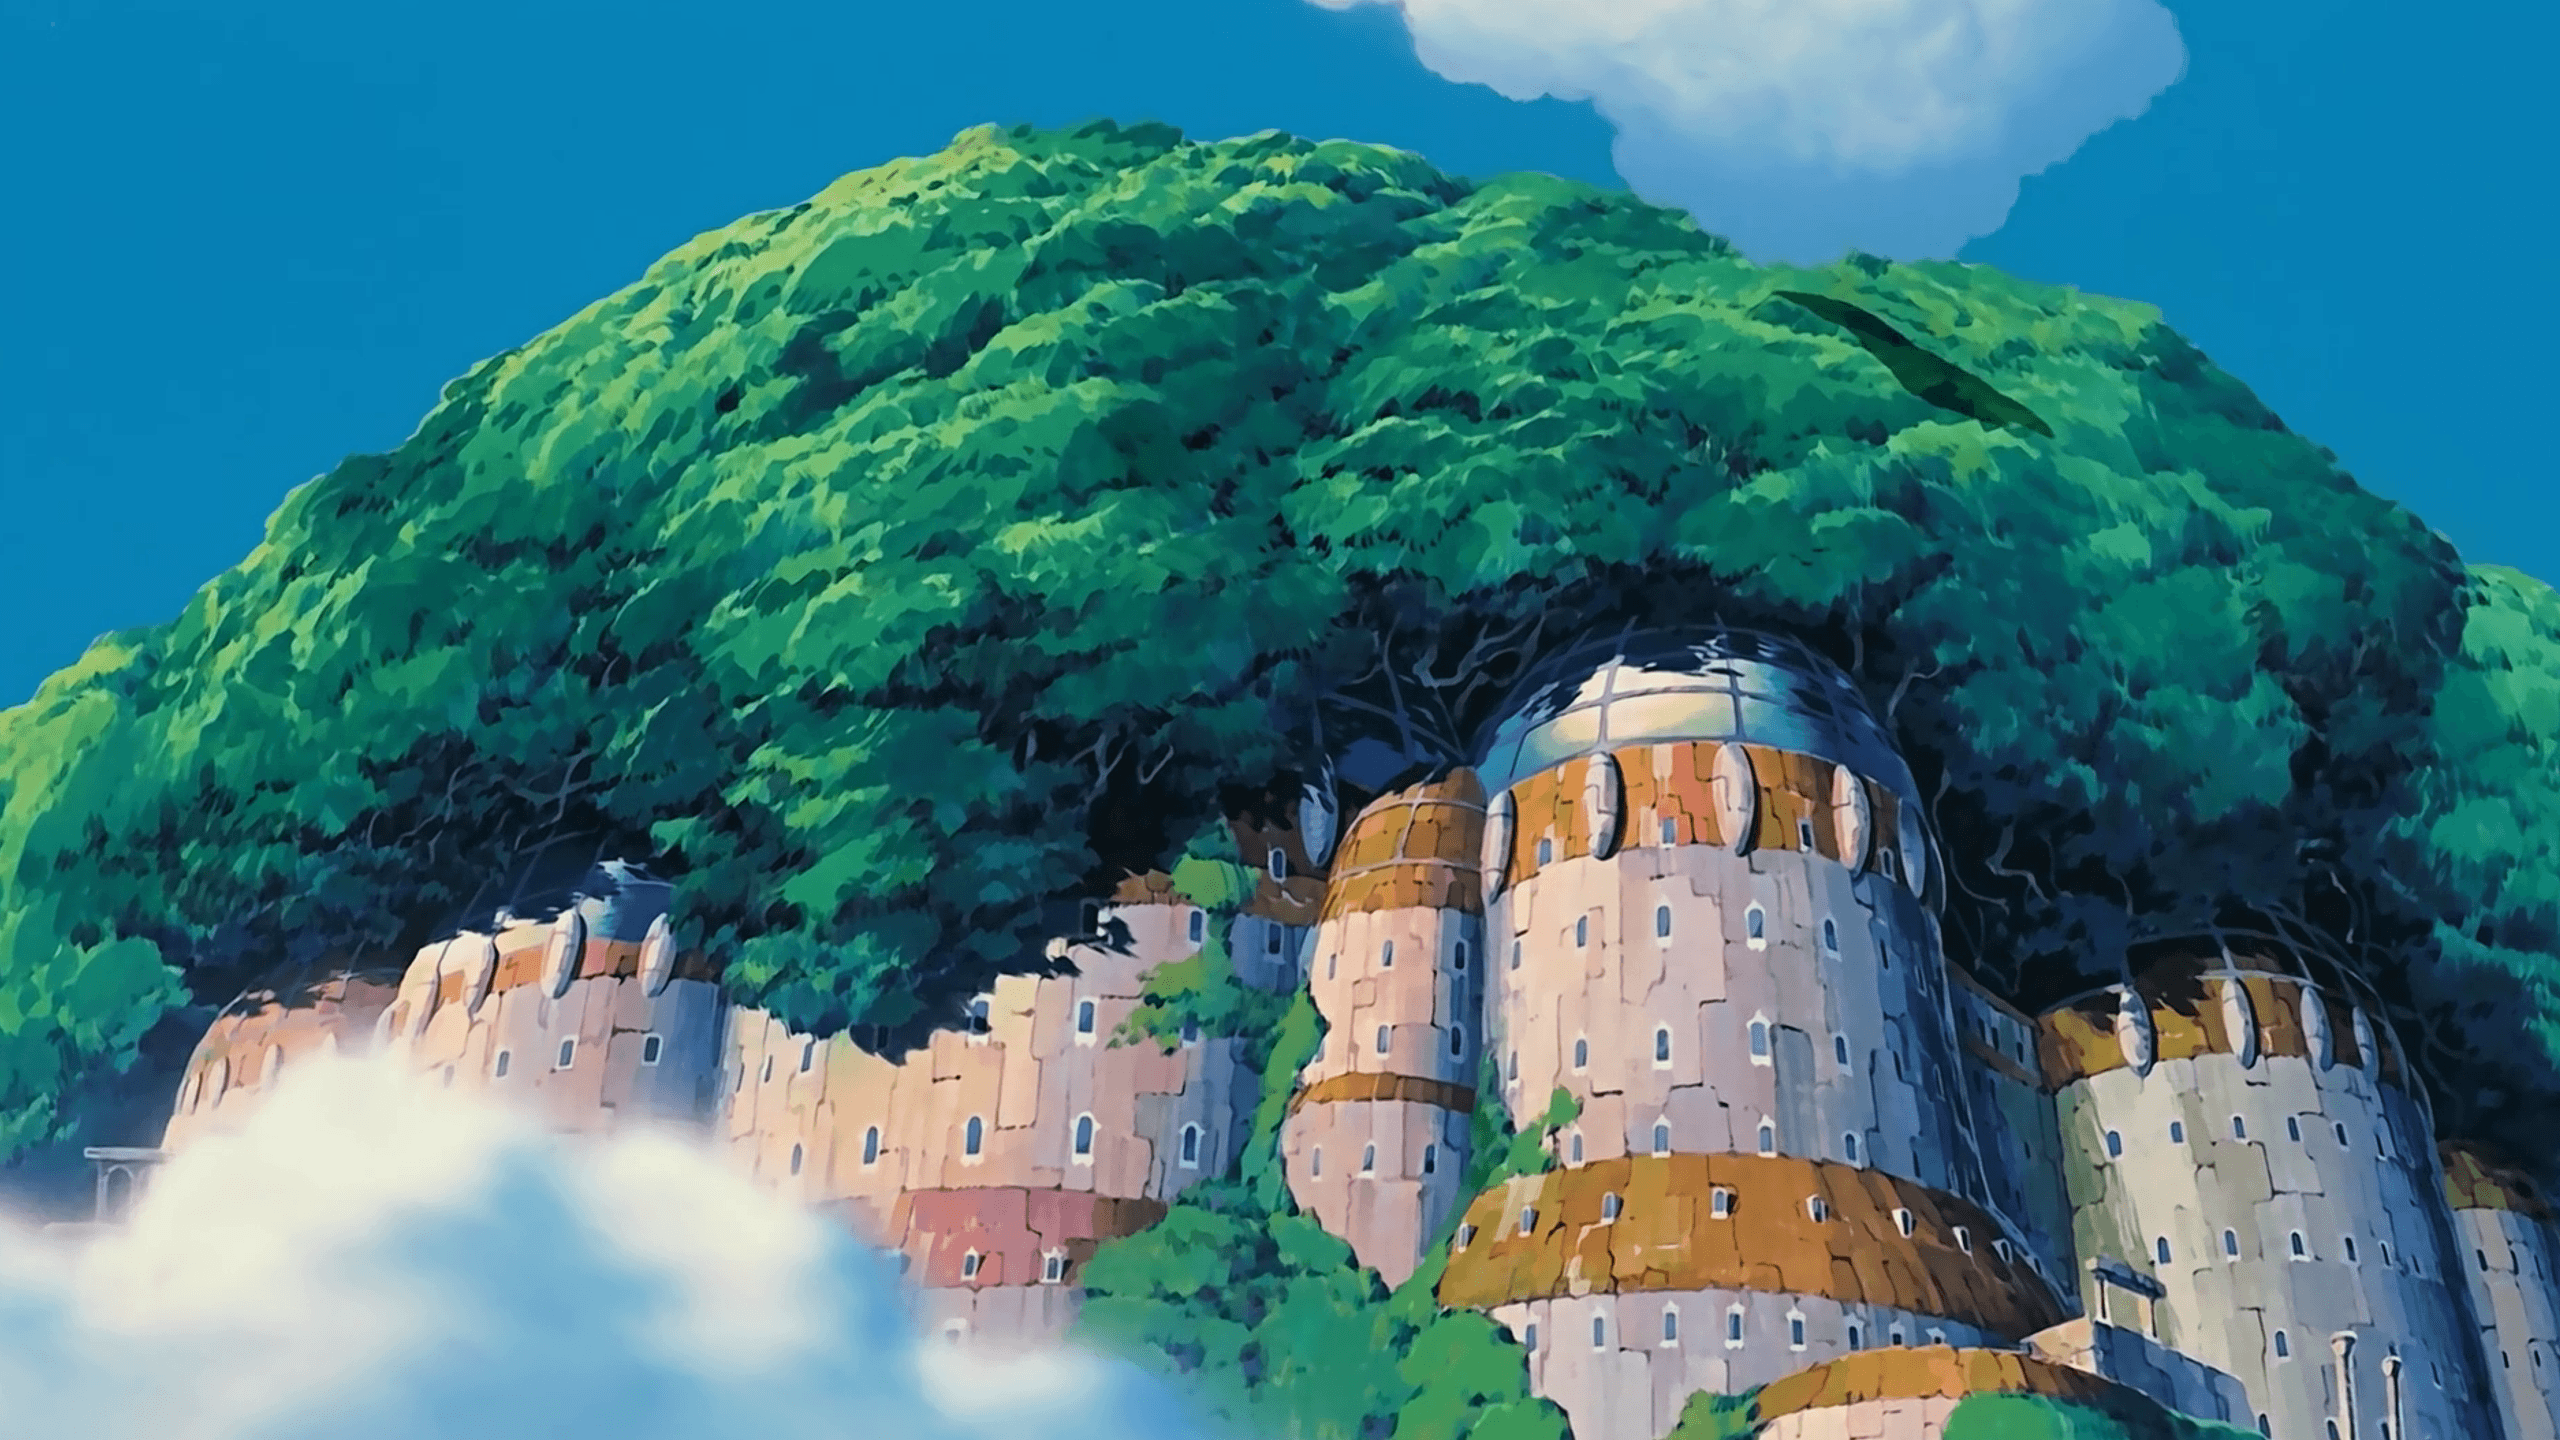 Studio Ghibli Laptop Wallpaper